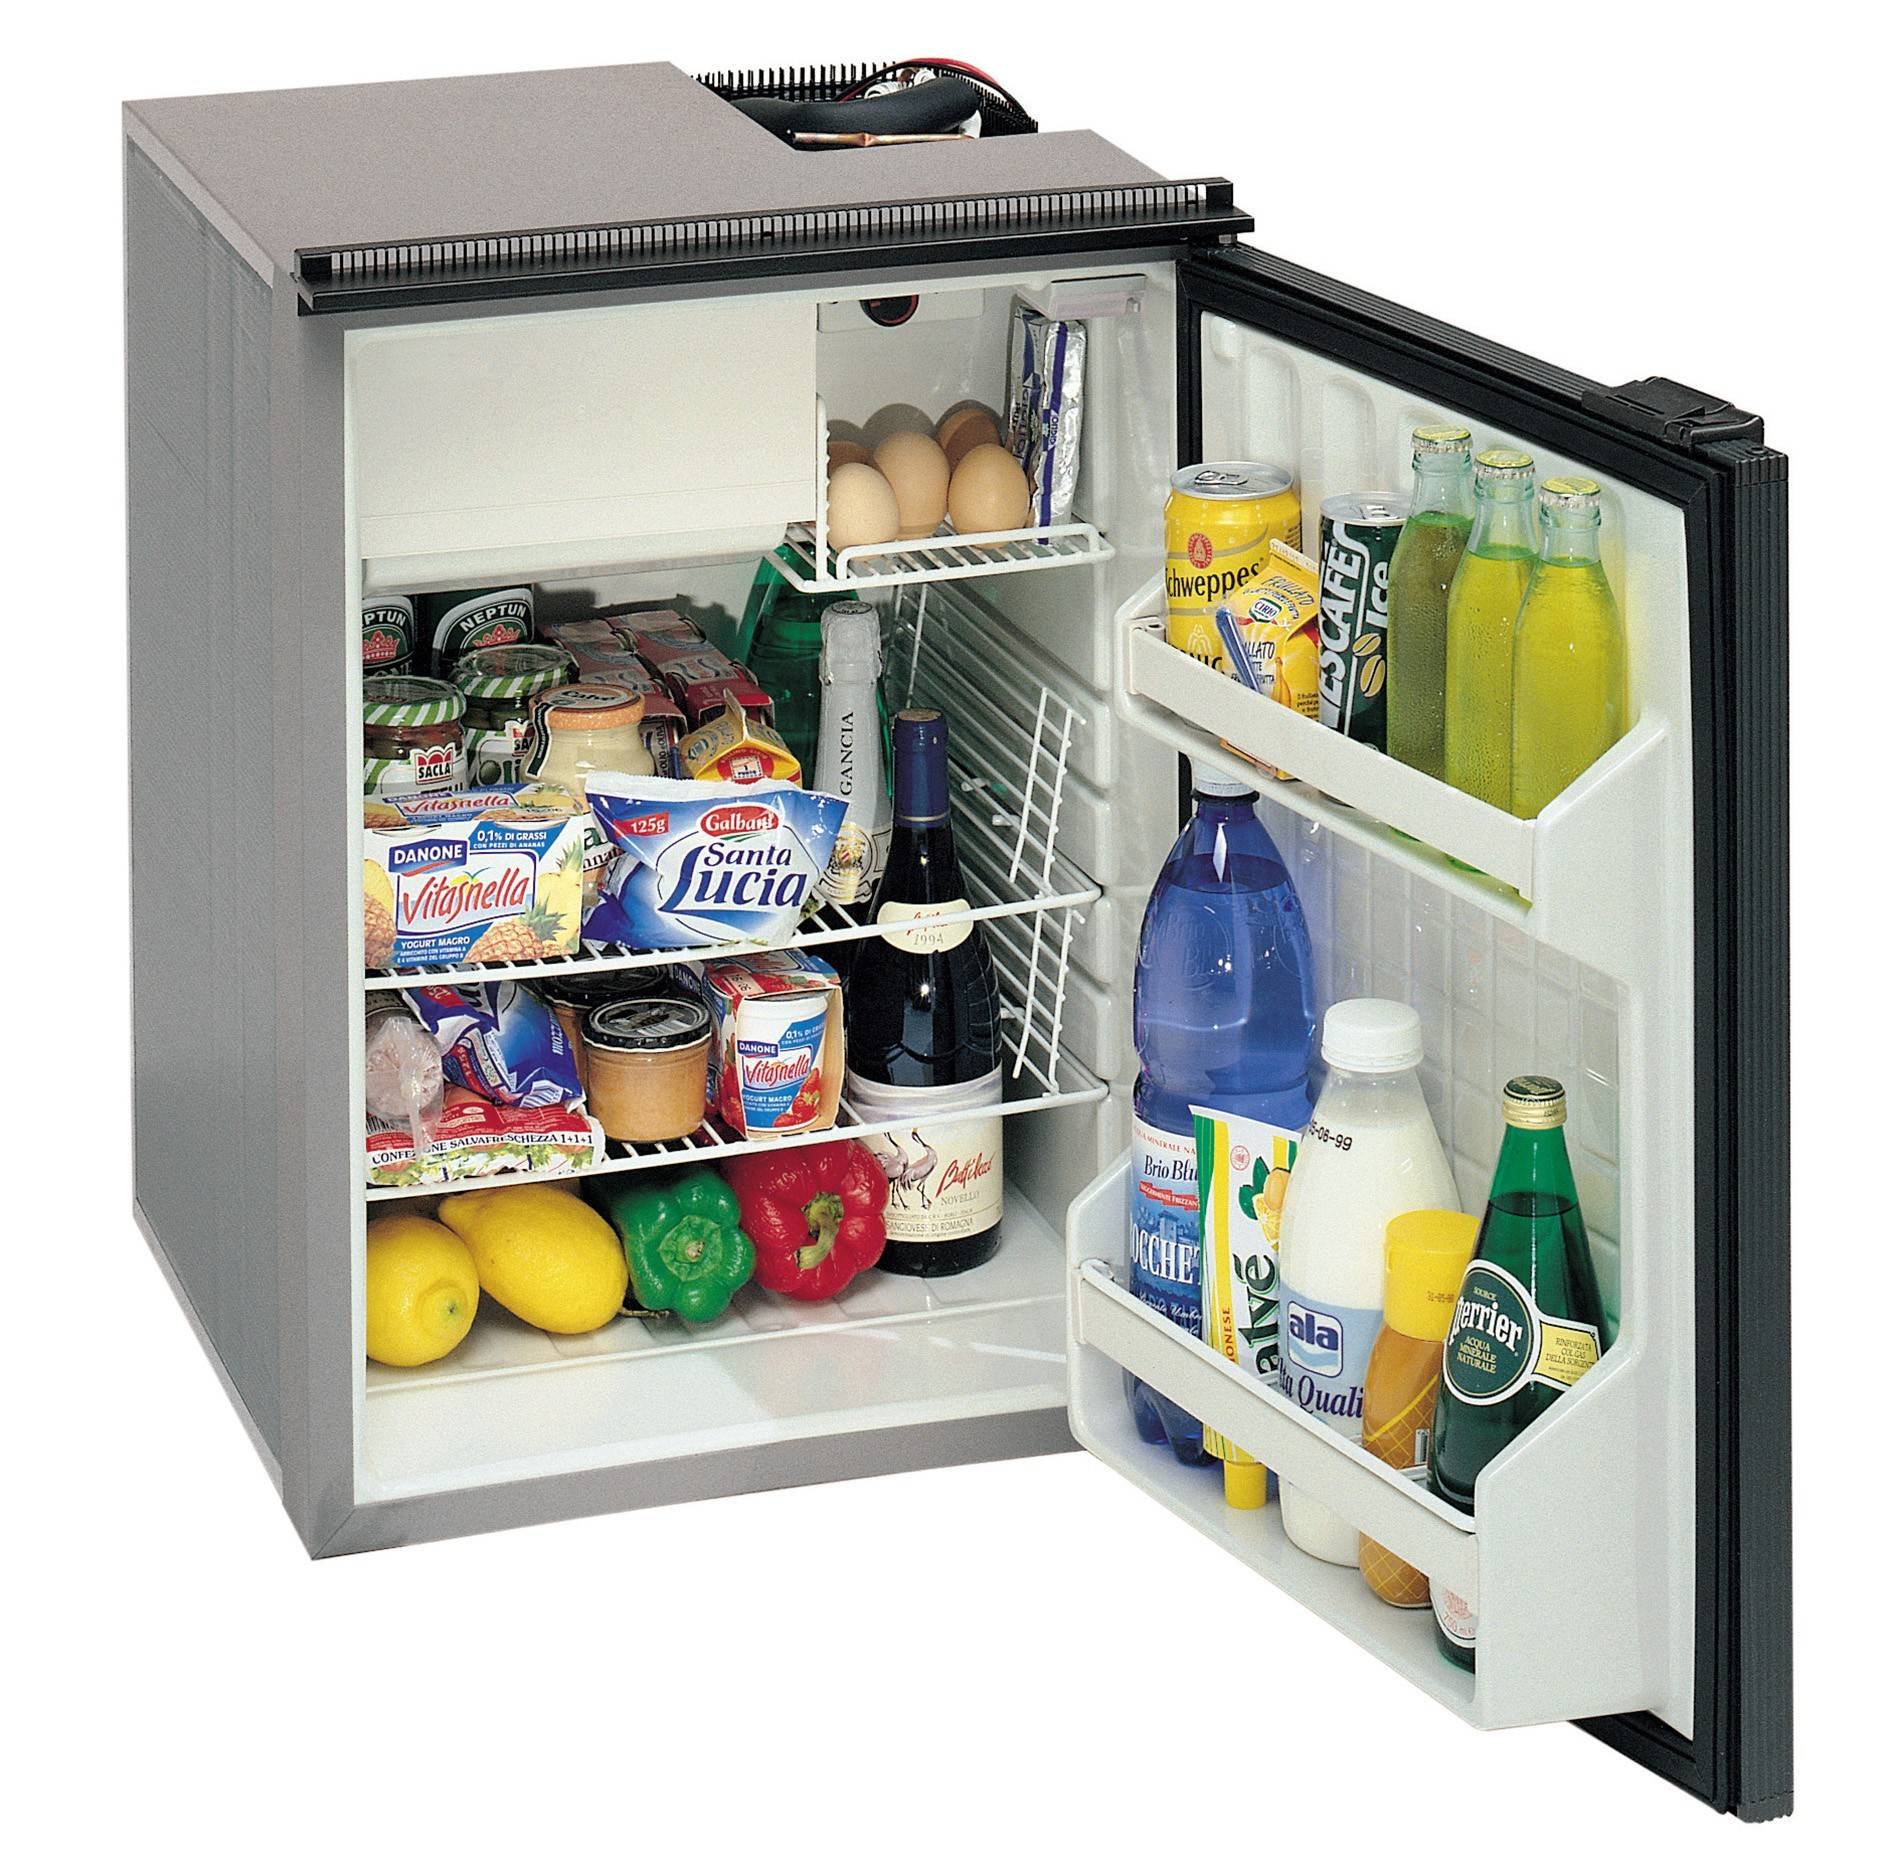 Выбор холодильника для дачи: 7 основных критериев, которые нужно знать перед покупкой, виды и особенности, лучшие модели